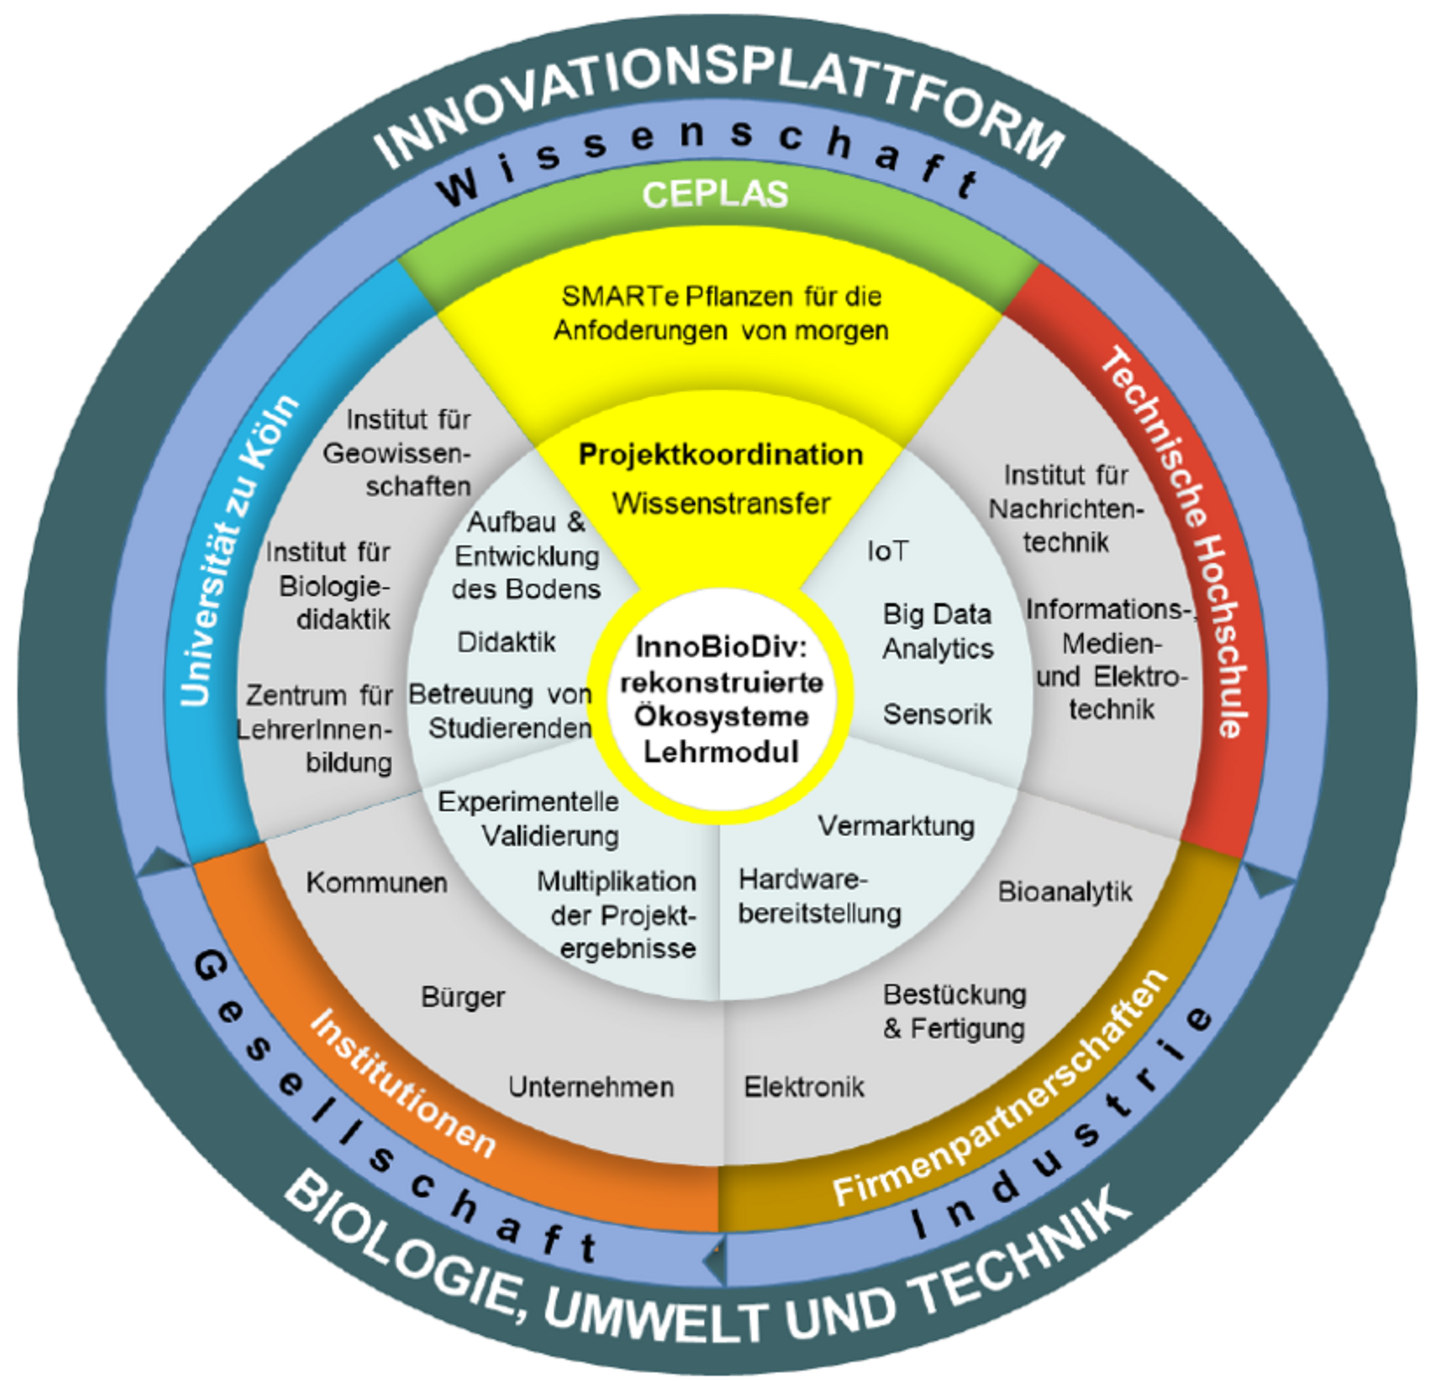 Schema der Struktur der Innovationsplattform die das Zusammenspiel der Bereiche der Wissenschaft, Gesellschaft und Industrie im Rahmen diese Projekts zeigt, sowie einzelne Aufgabenbereiche der Projektpartner.